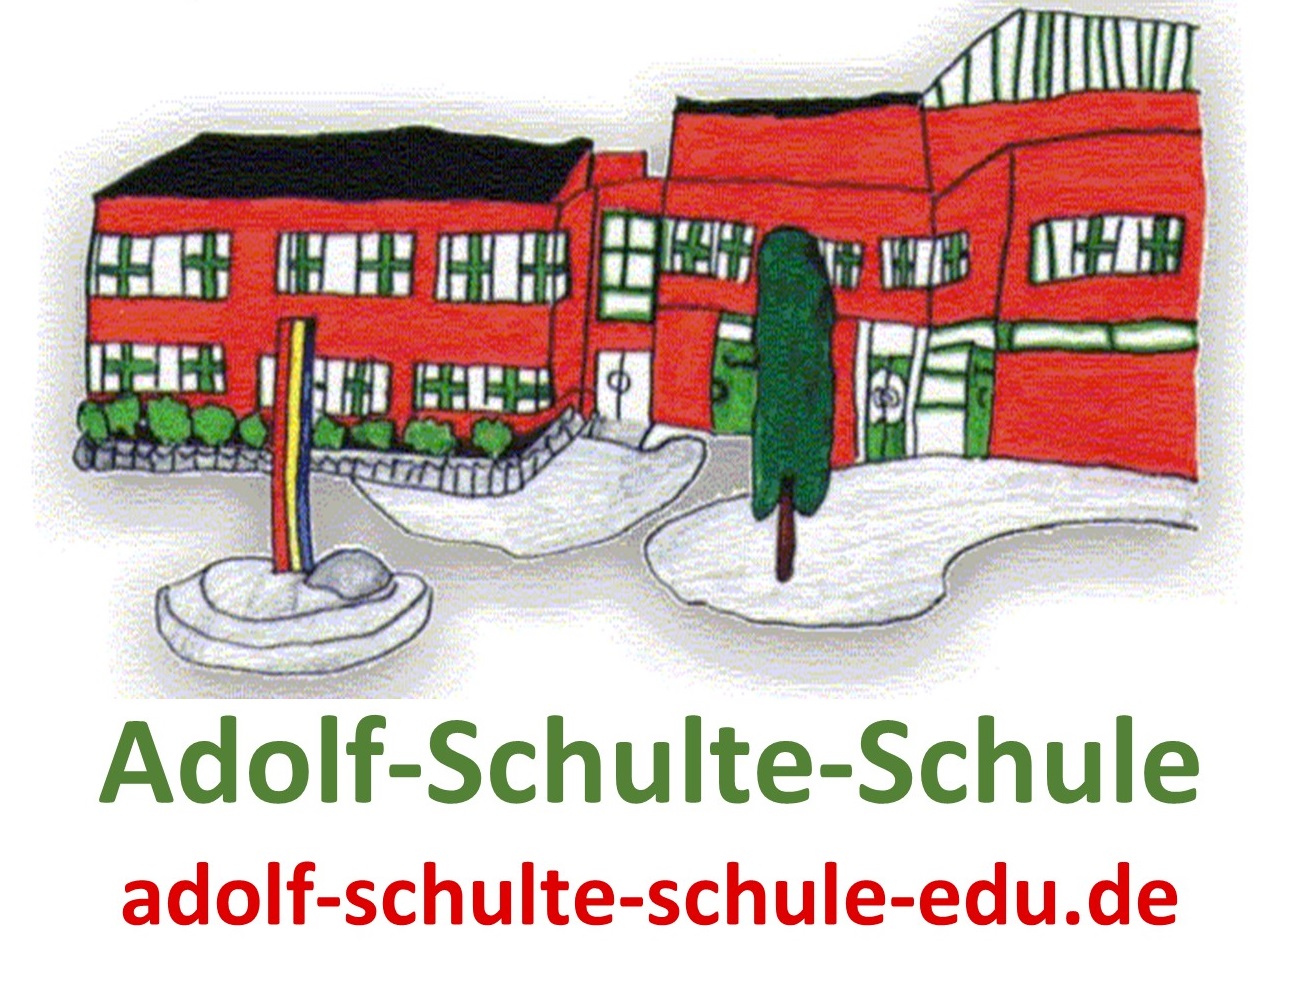 Adolf-Schulte-Schule Dortmund